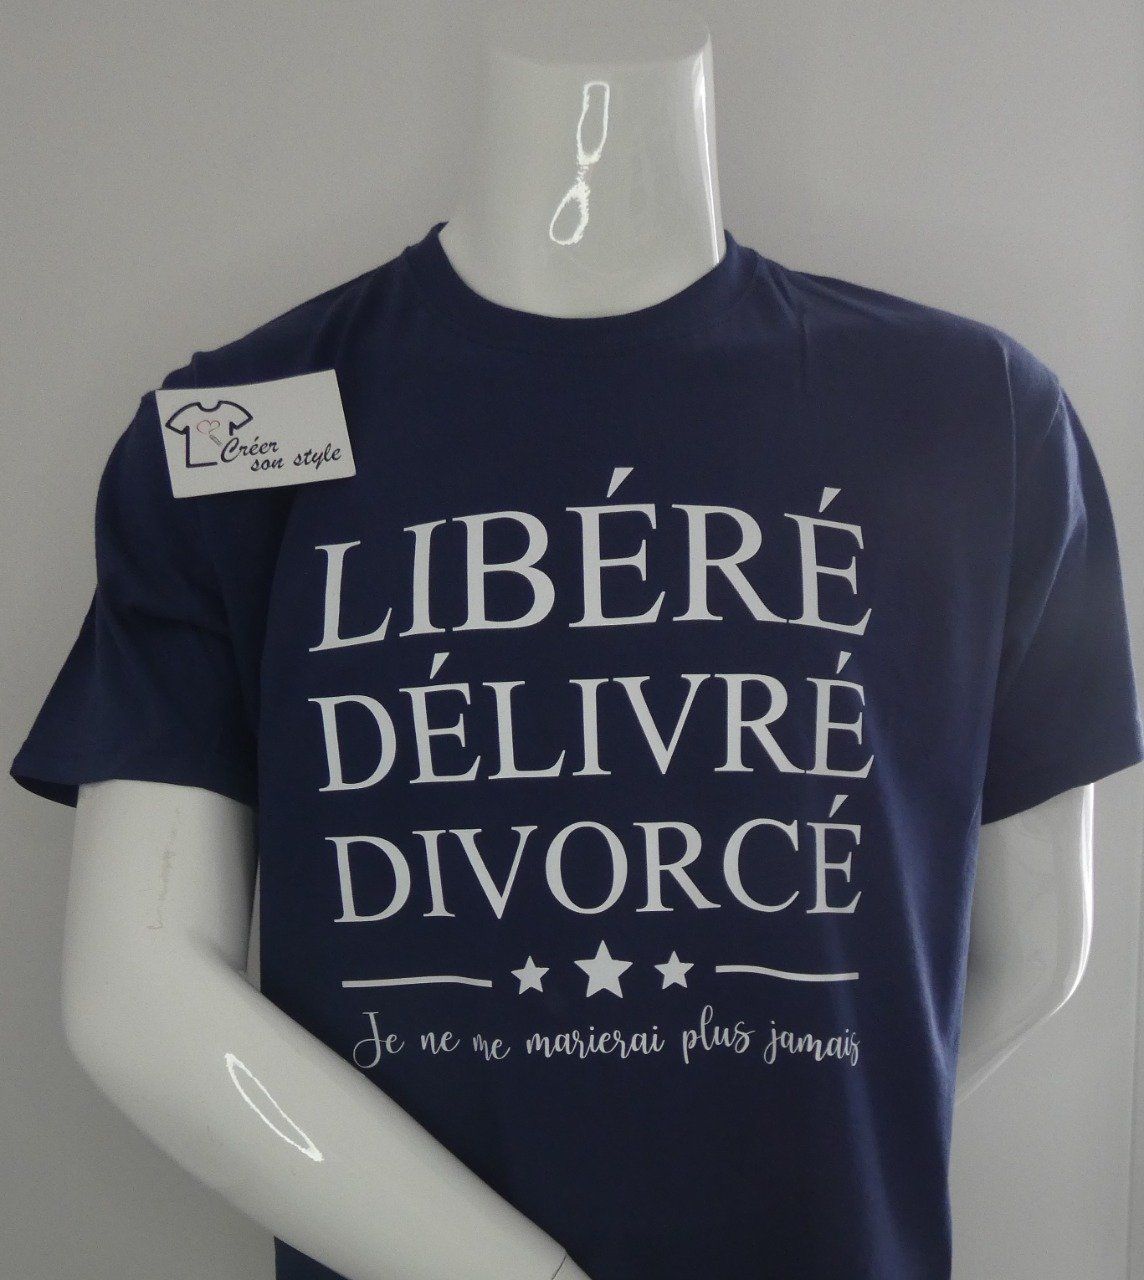 tee shirt homme "libéré délivré divorcé je ne me marierai plus jamais"